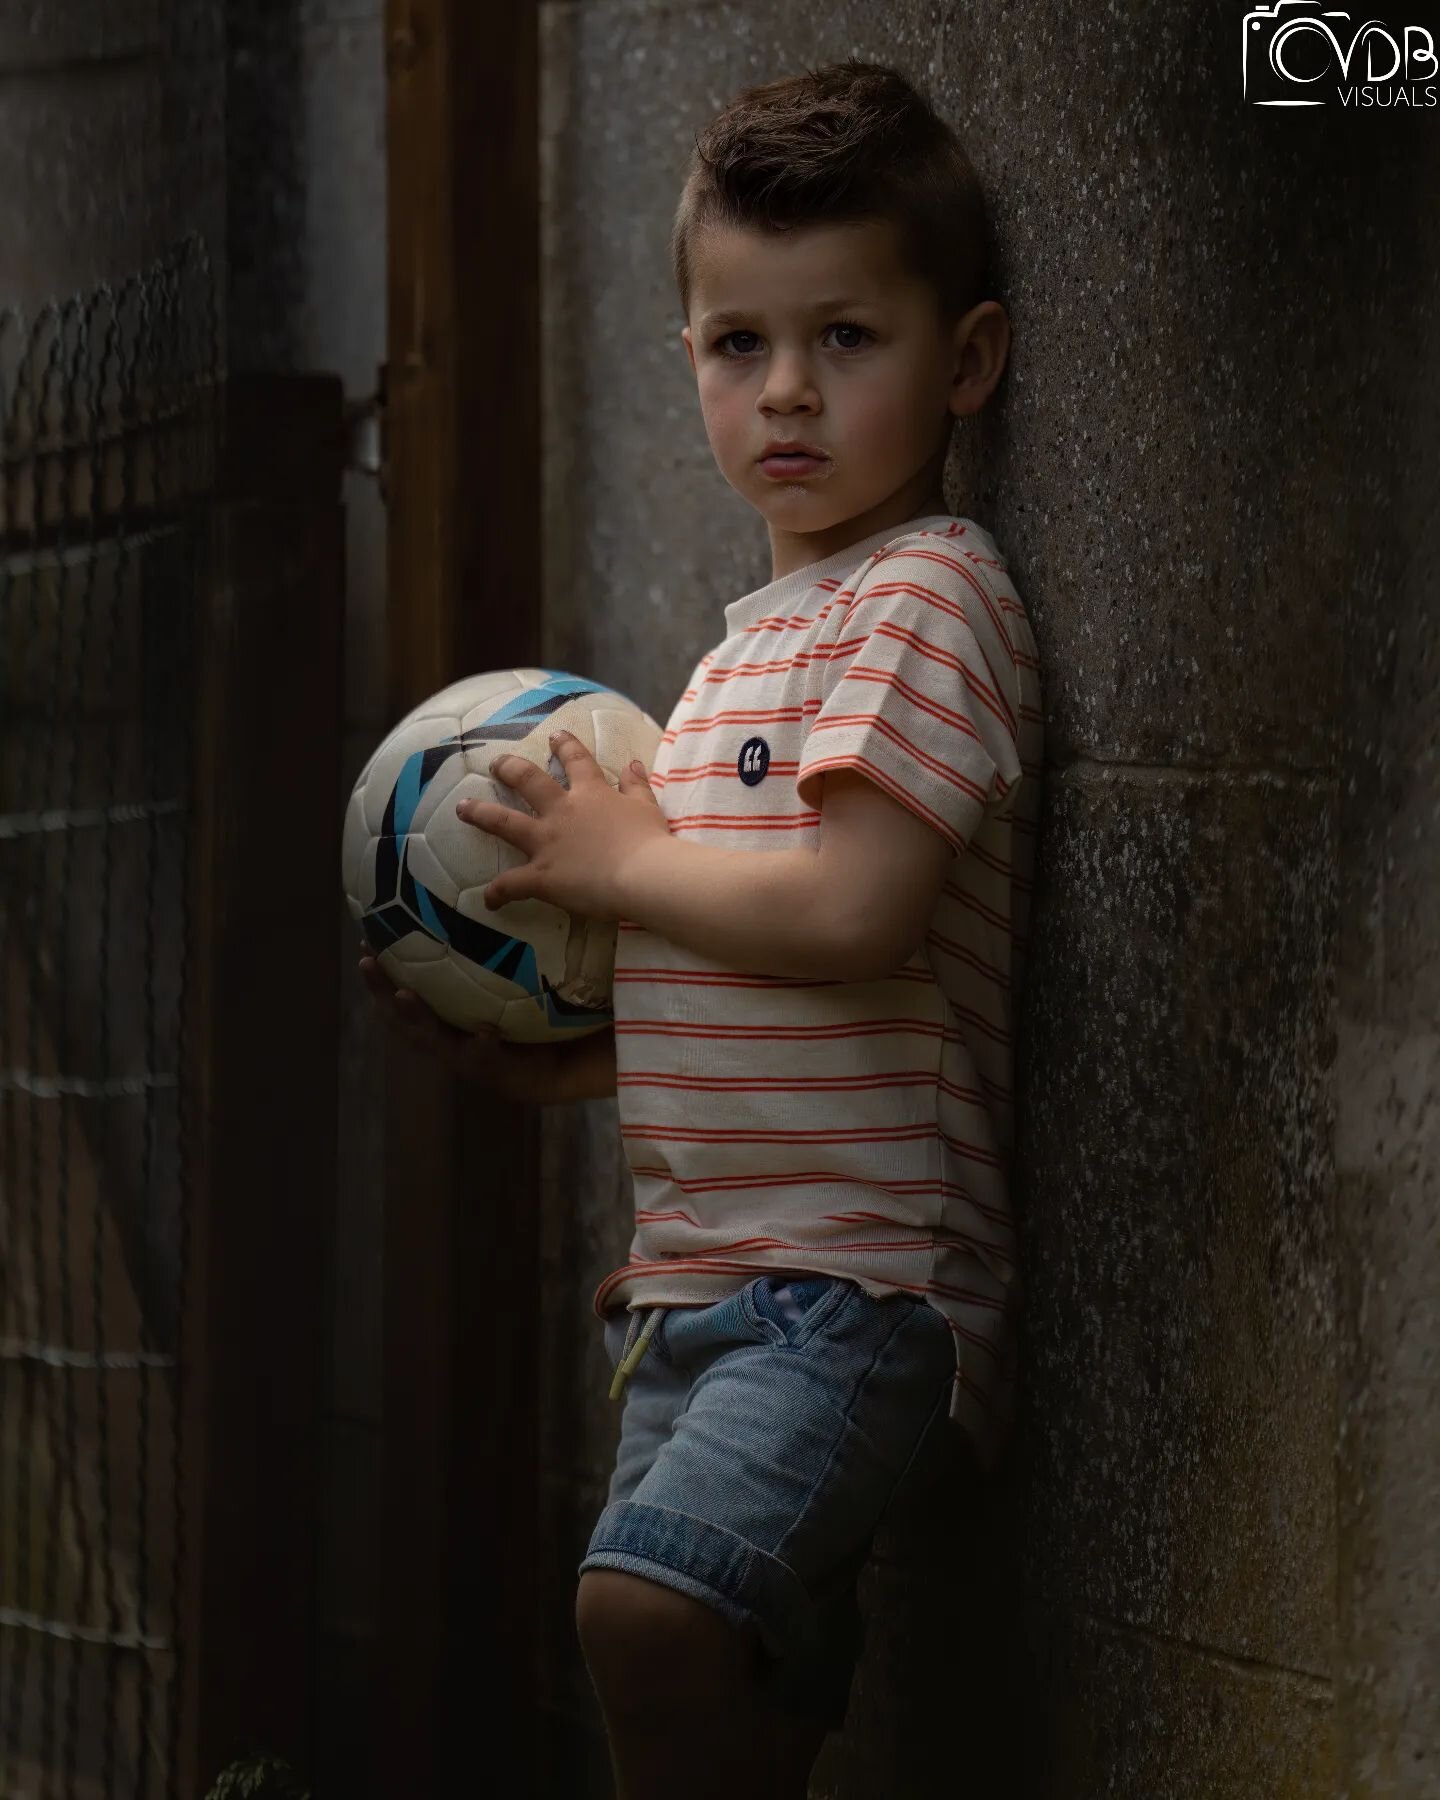 www.vdb-visuals.be

#portret #voetbal #kids #lentefeest #fotograaf #fotografie #foto #fotoart #composition